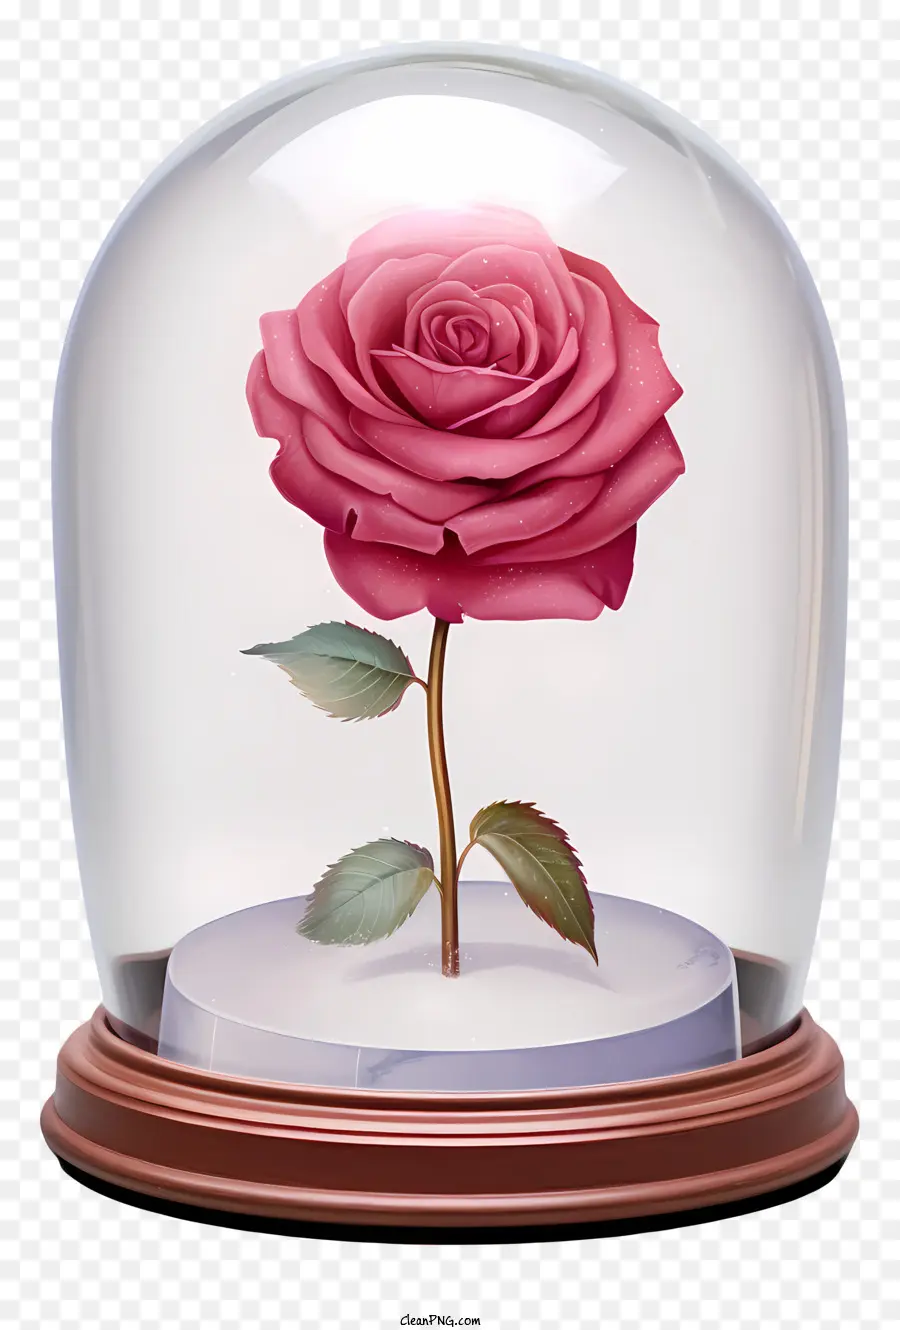 rosa rossa - Rosa rossa in cupola di vetro, che simboleggia l'amore